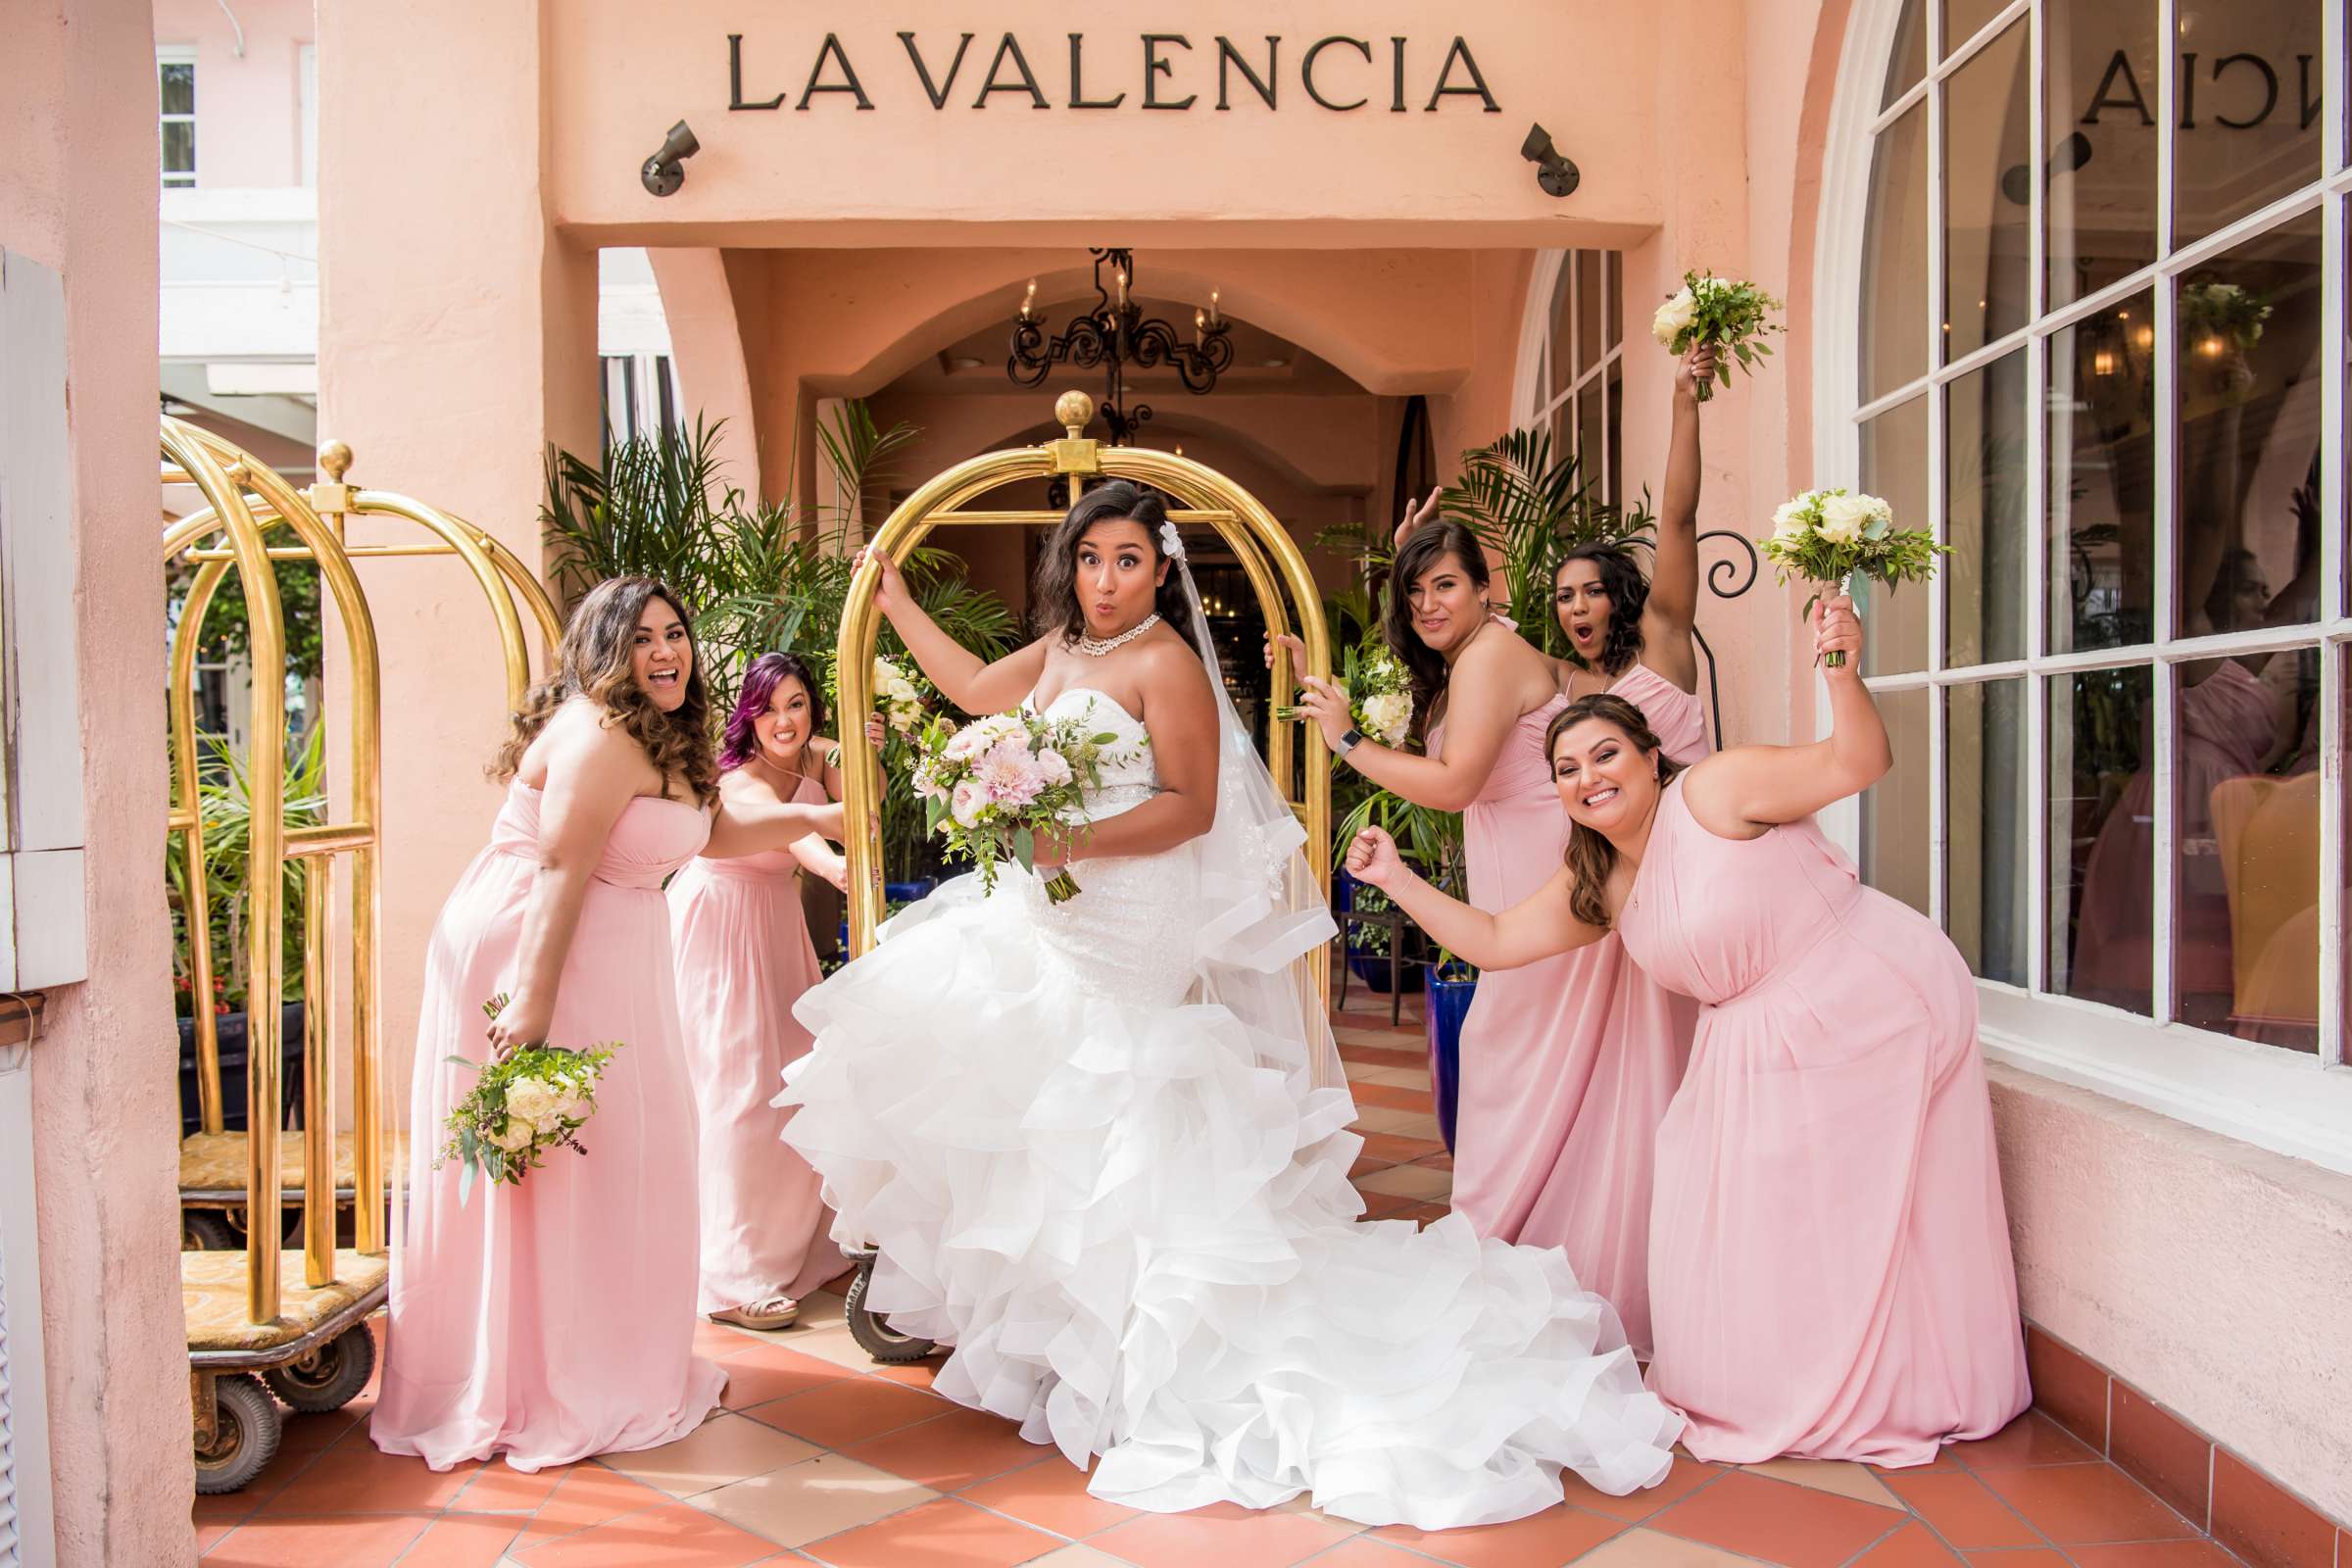 La Valencia Wedding, Deborah and Albert Wedding Photo #8 by True Photography